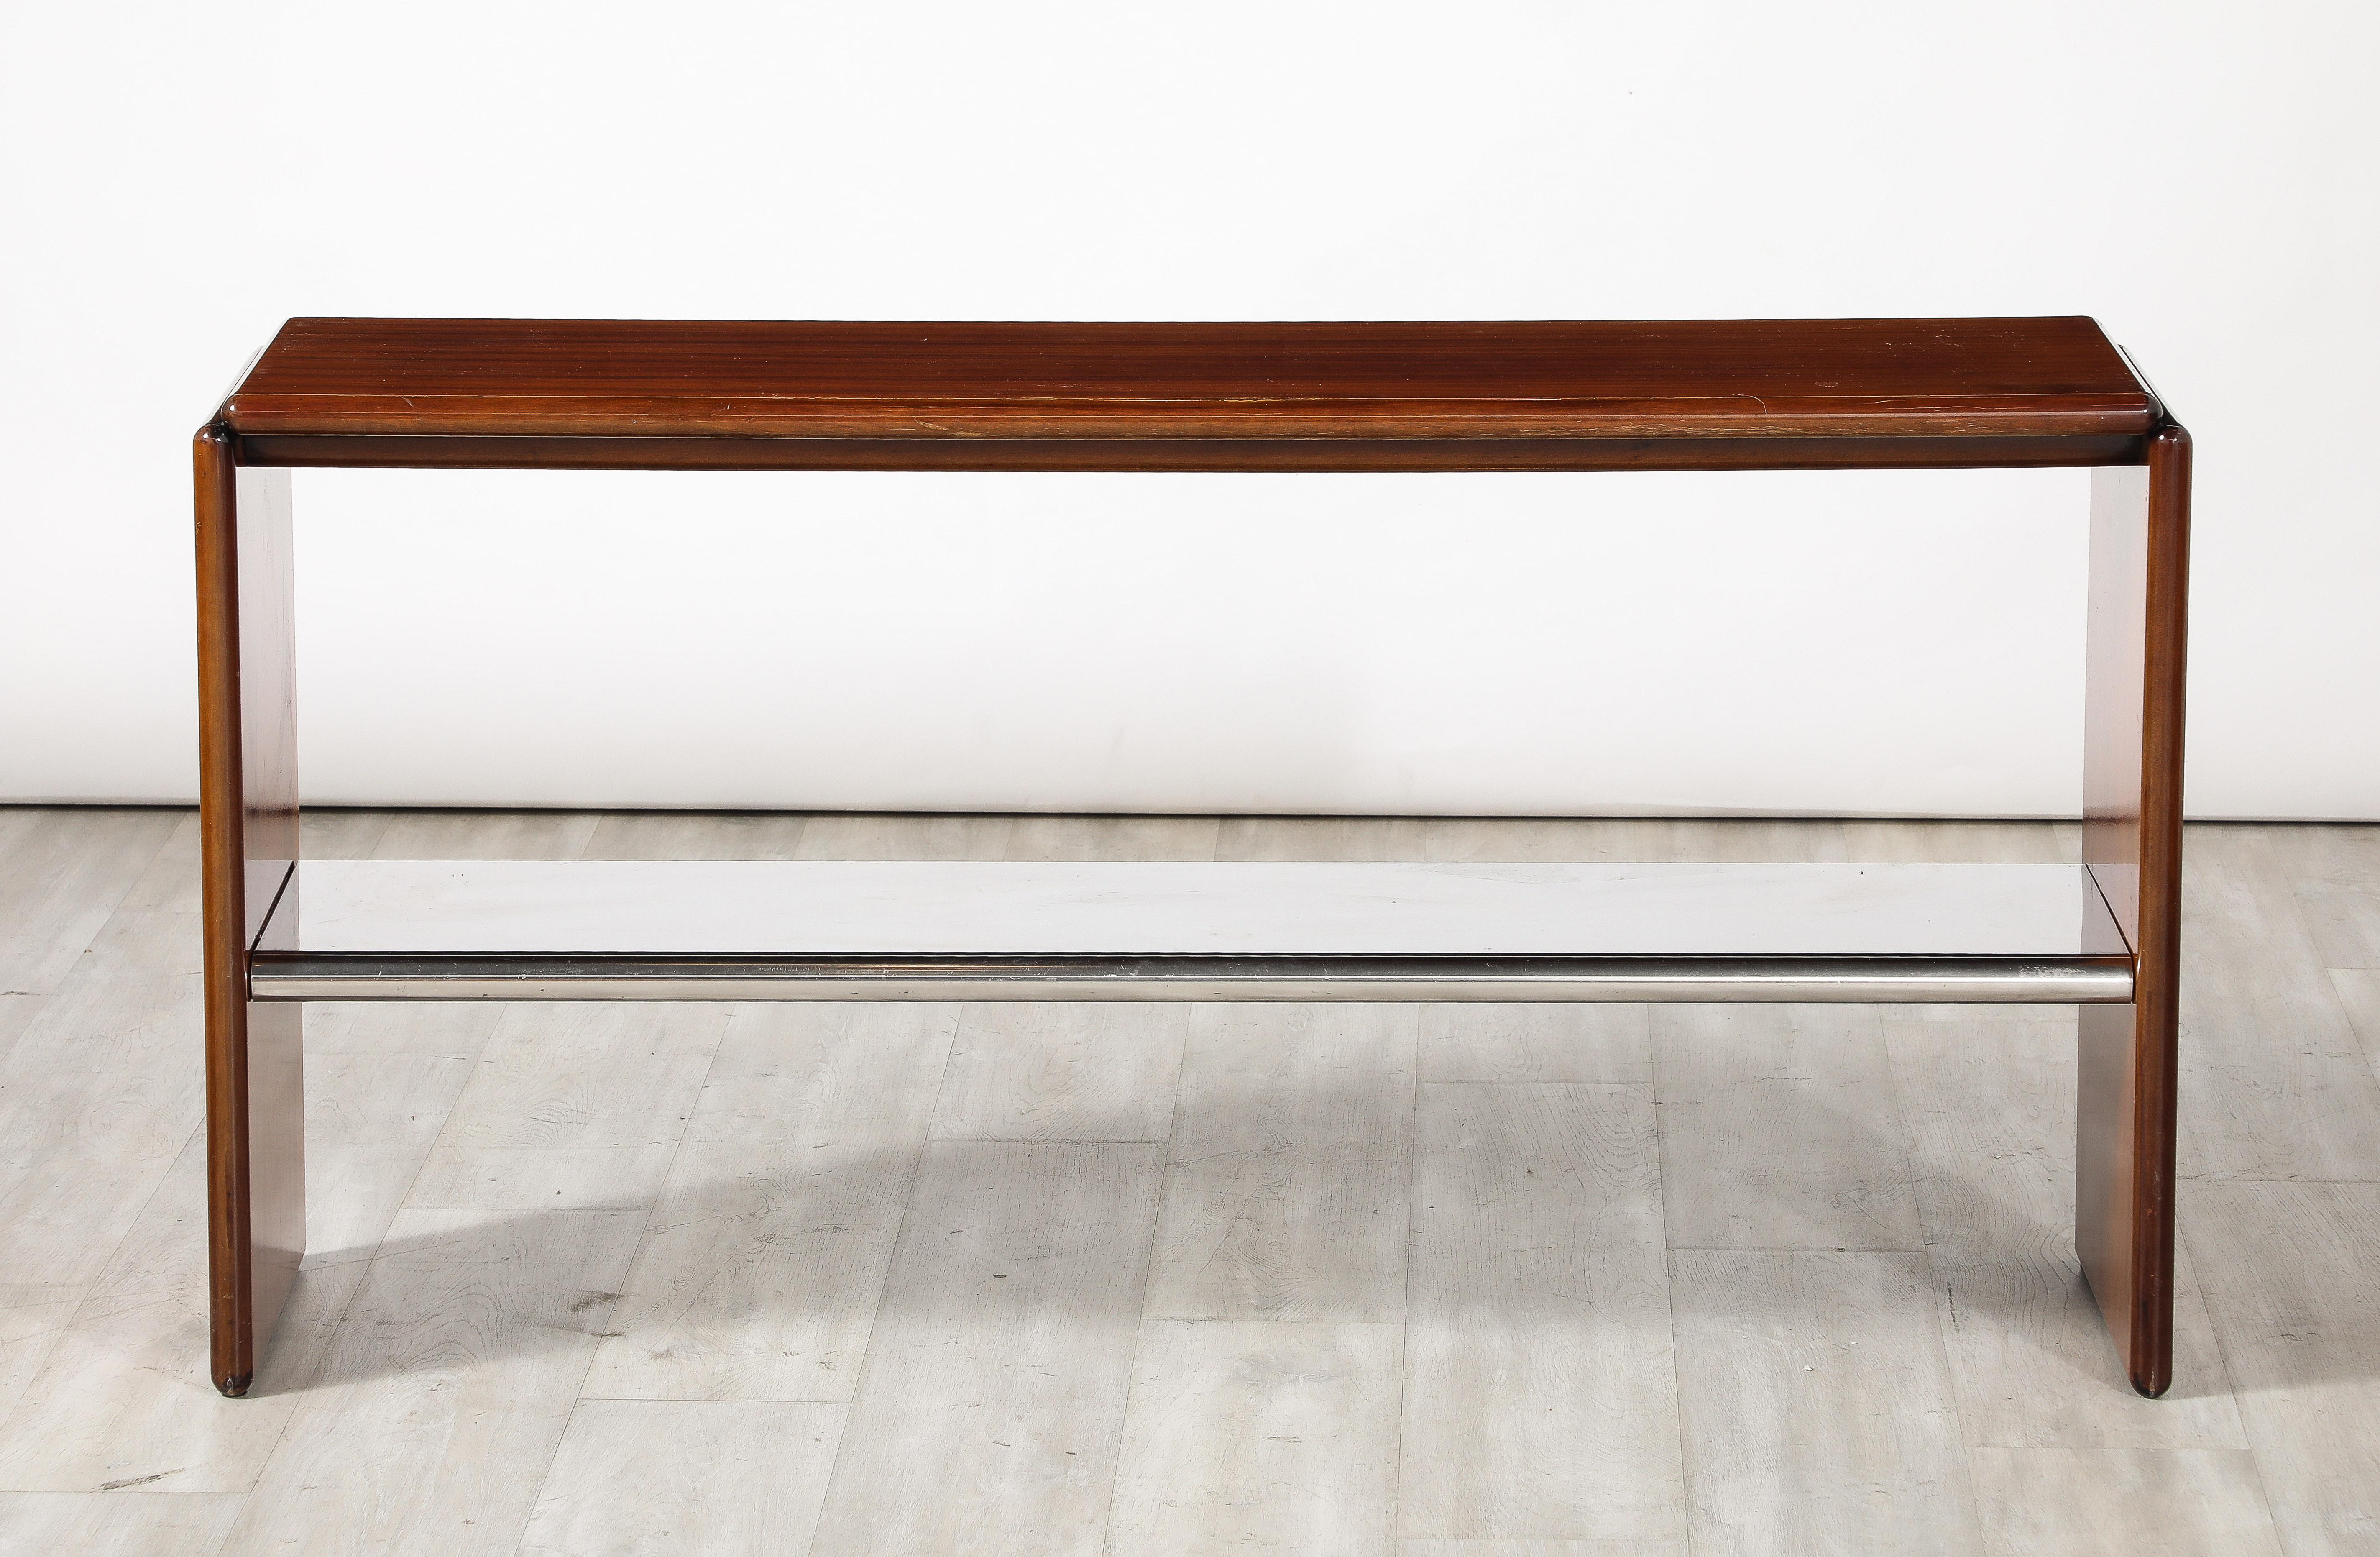 Console moderniste italienne en bois de palissandre avec une étagère chromée.  Une pièce polyvalente, chic et épurée, avec de merveilleux contrastes de matières. 
Italie, vers 1960 
Dimensions : 27 3/4